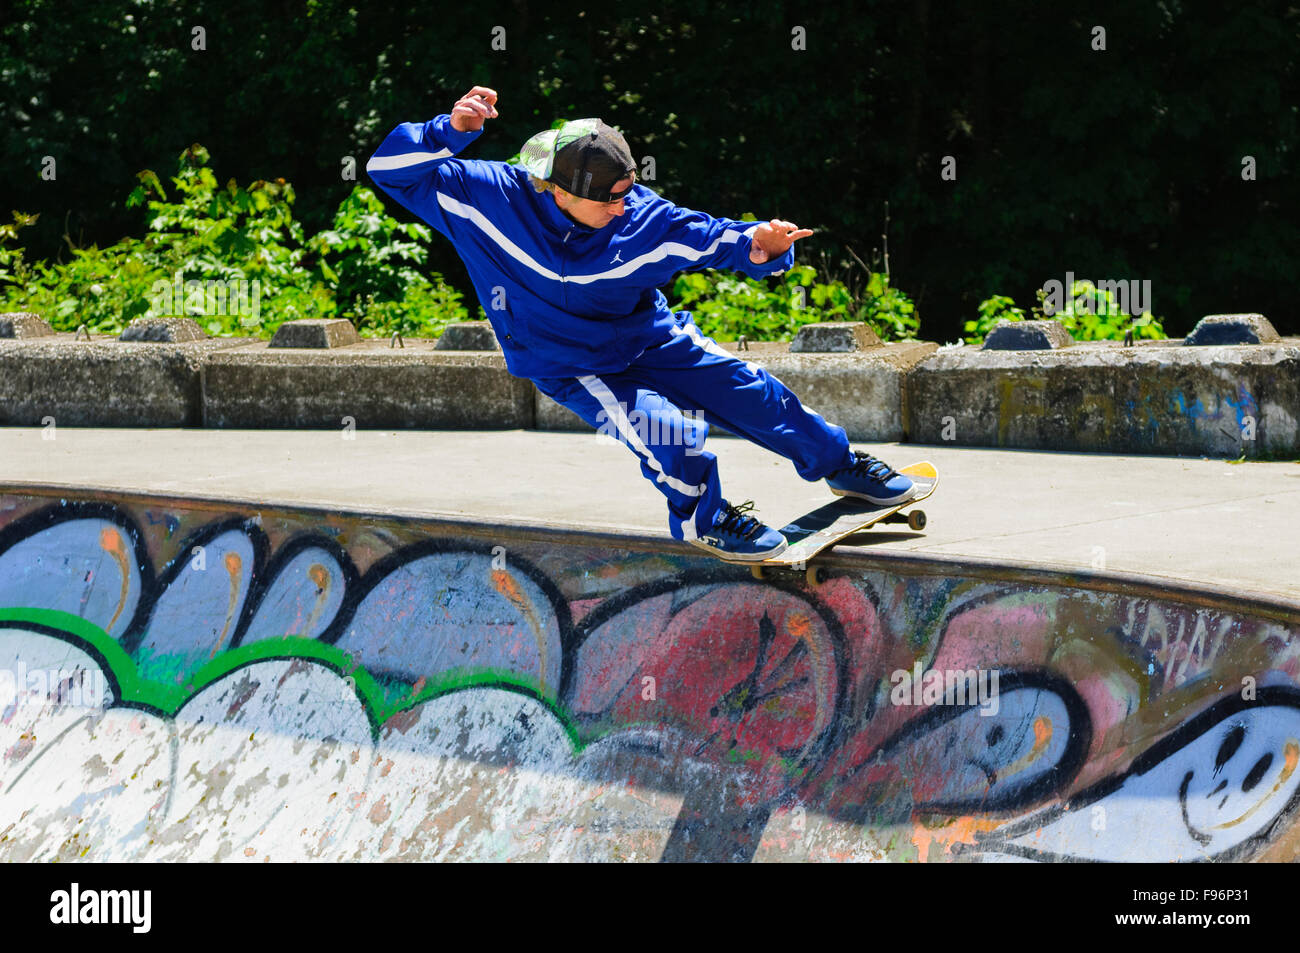 Ein Skateboarder Tricks auf seinem Skateboard zu tun. Stockfoto